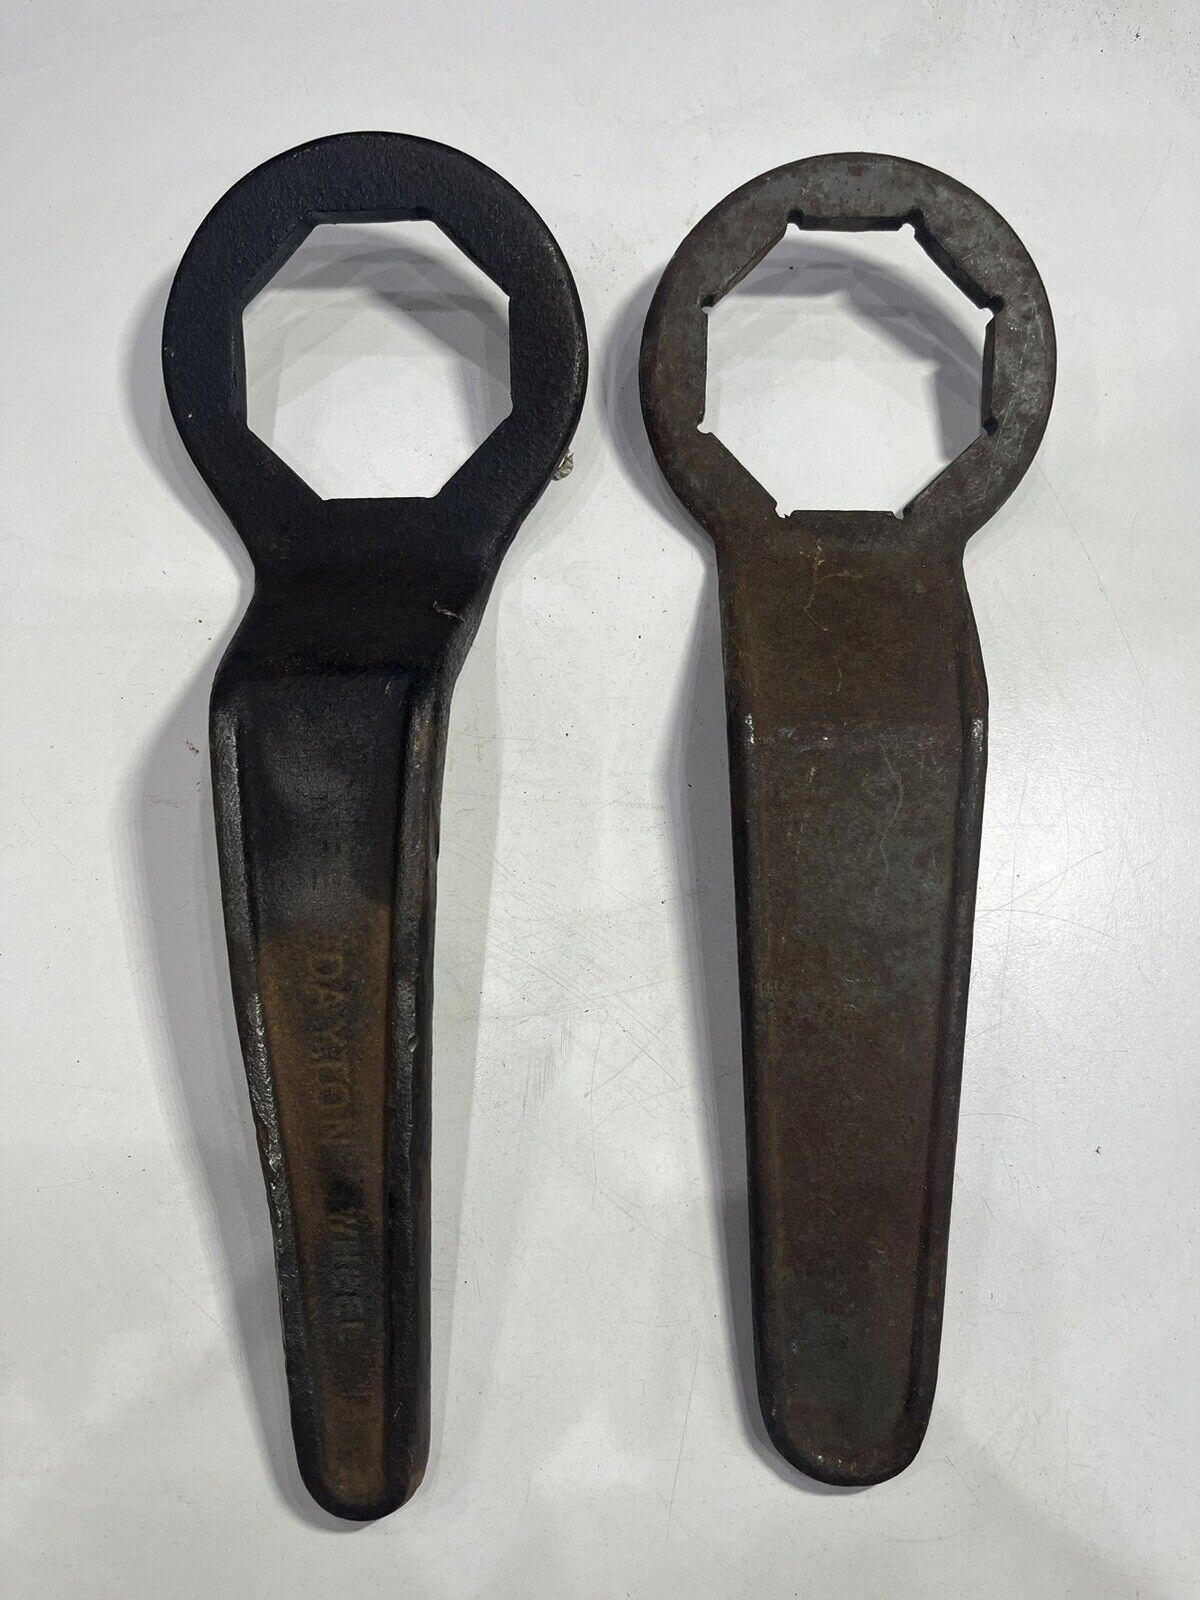 Dayton Heel offset Vintage box wrench Set of 2